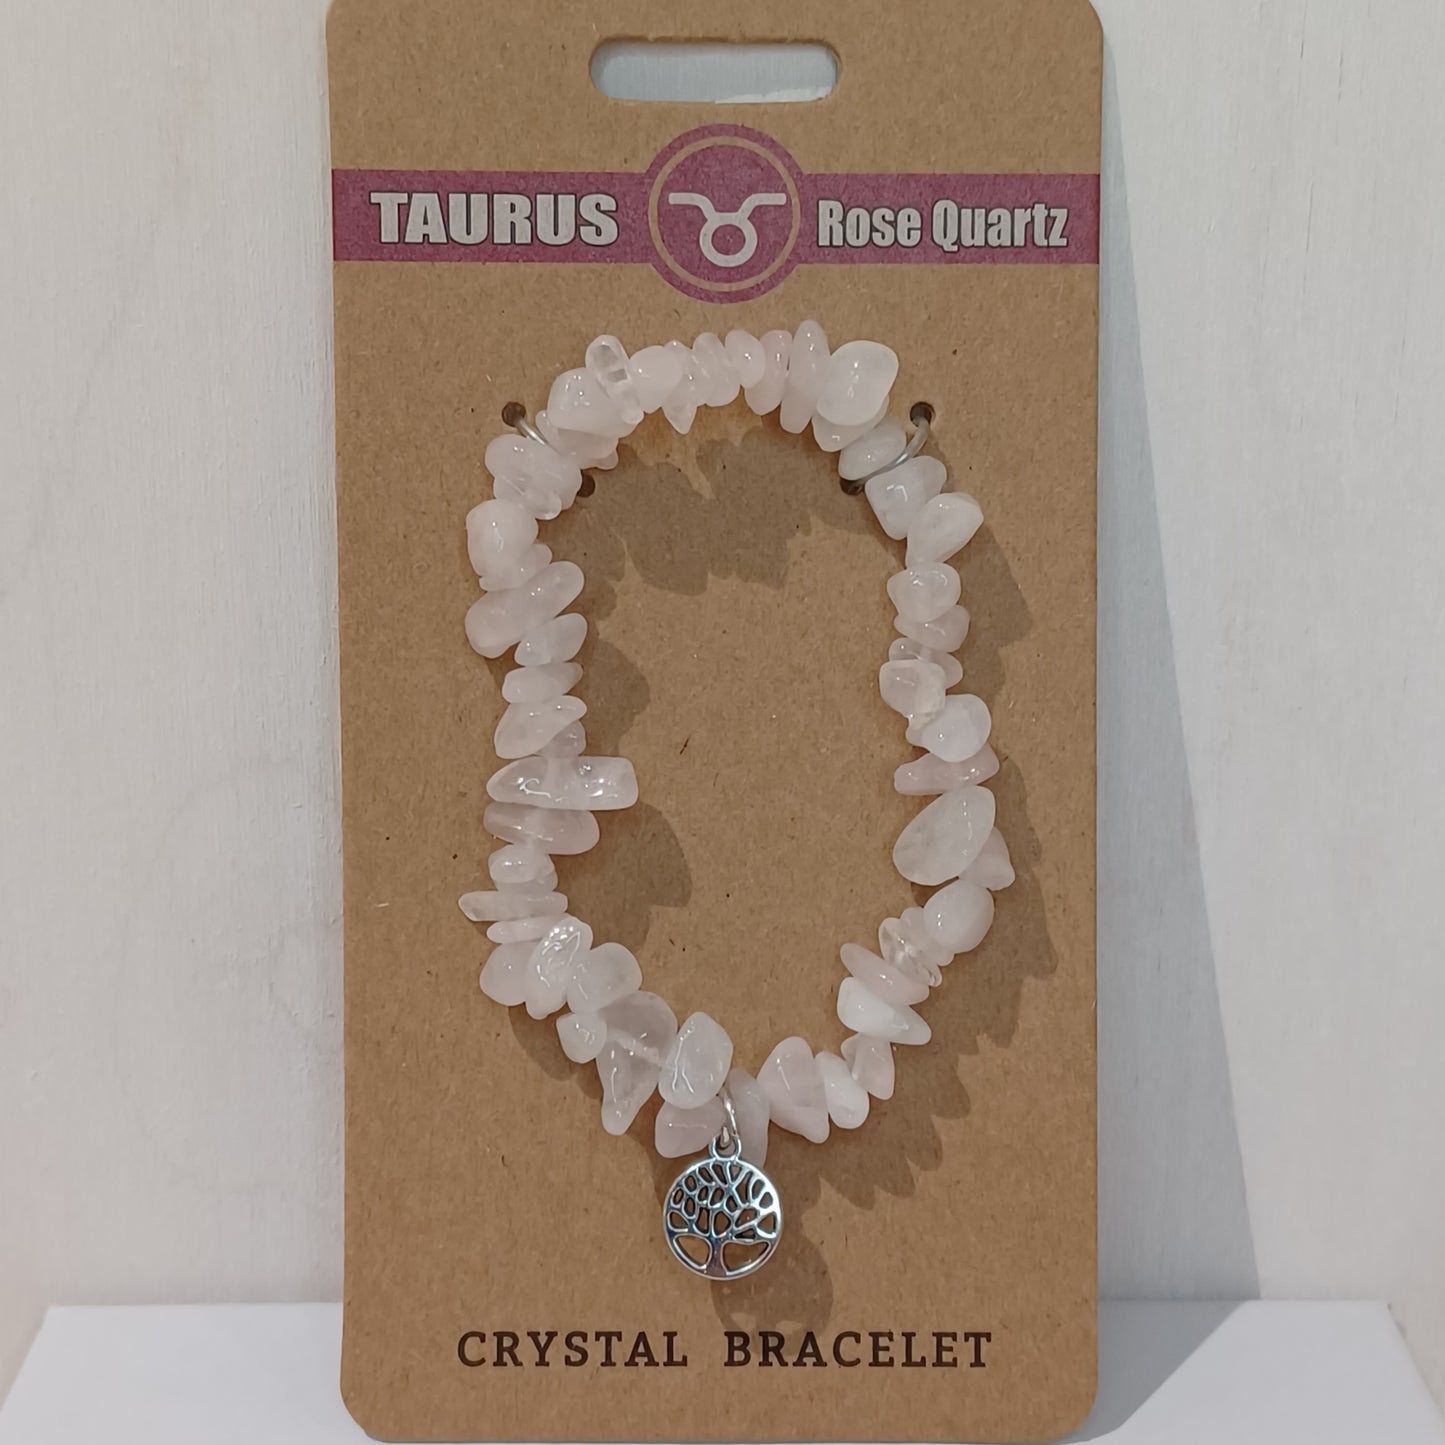 Crystal Bracelet - Taurus Rose Quartz